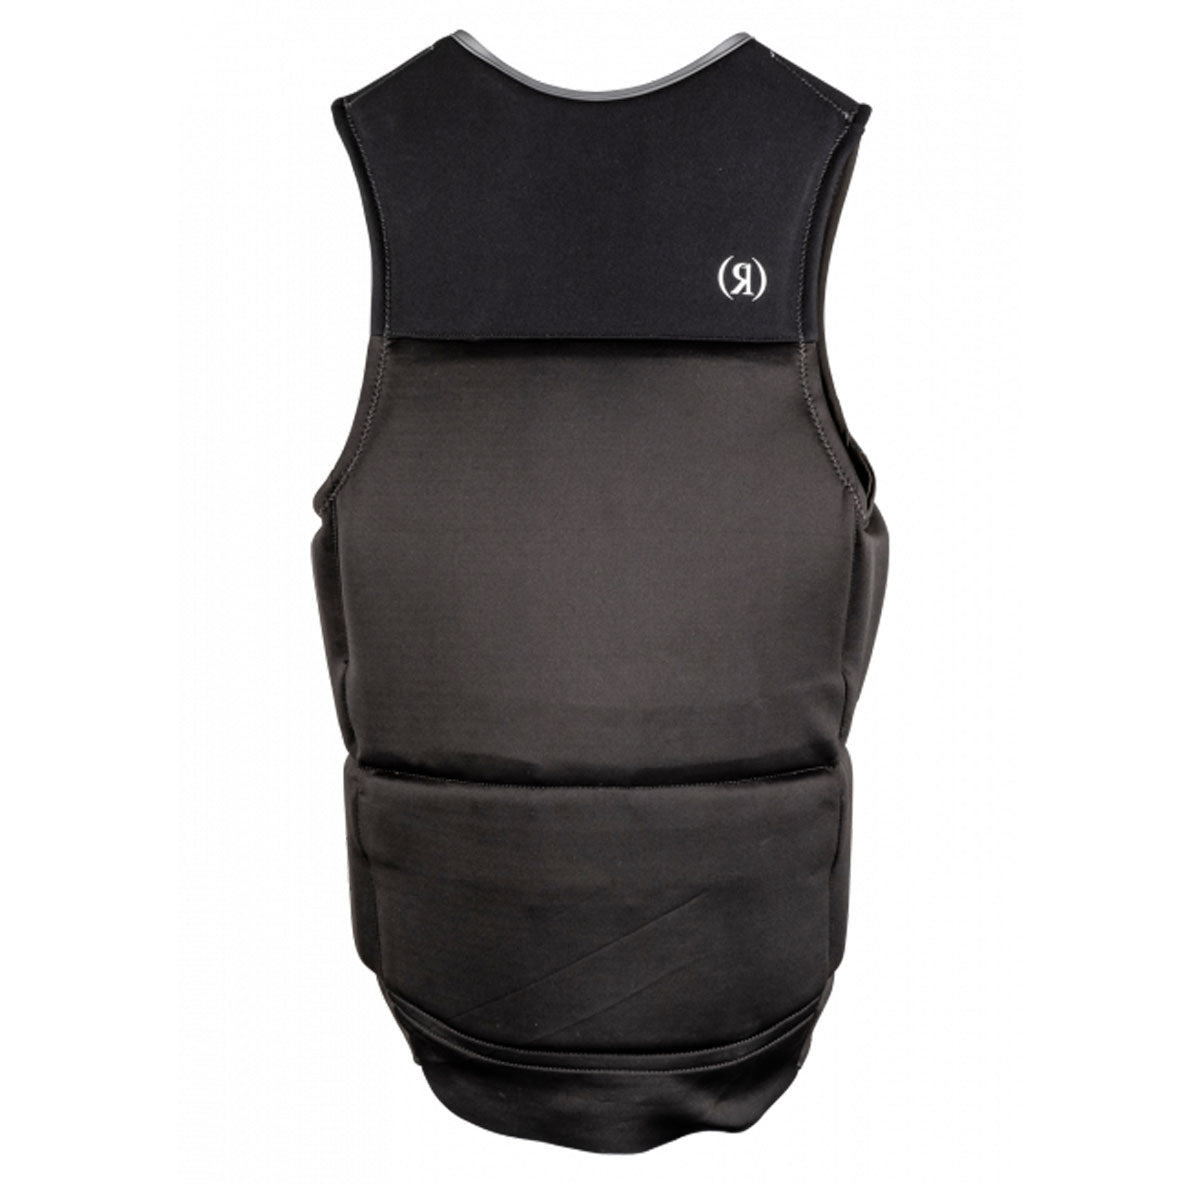 The comfortable back of a Ronix Koal Capella 3.0 CGA Men's Vest.